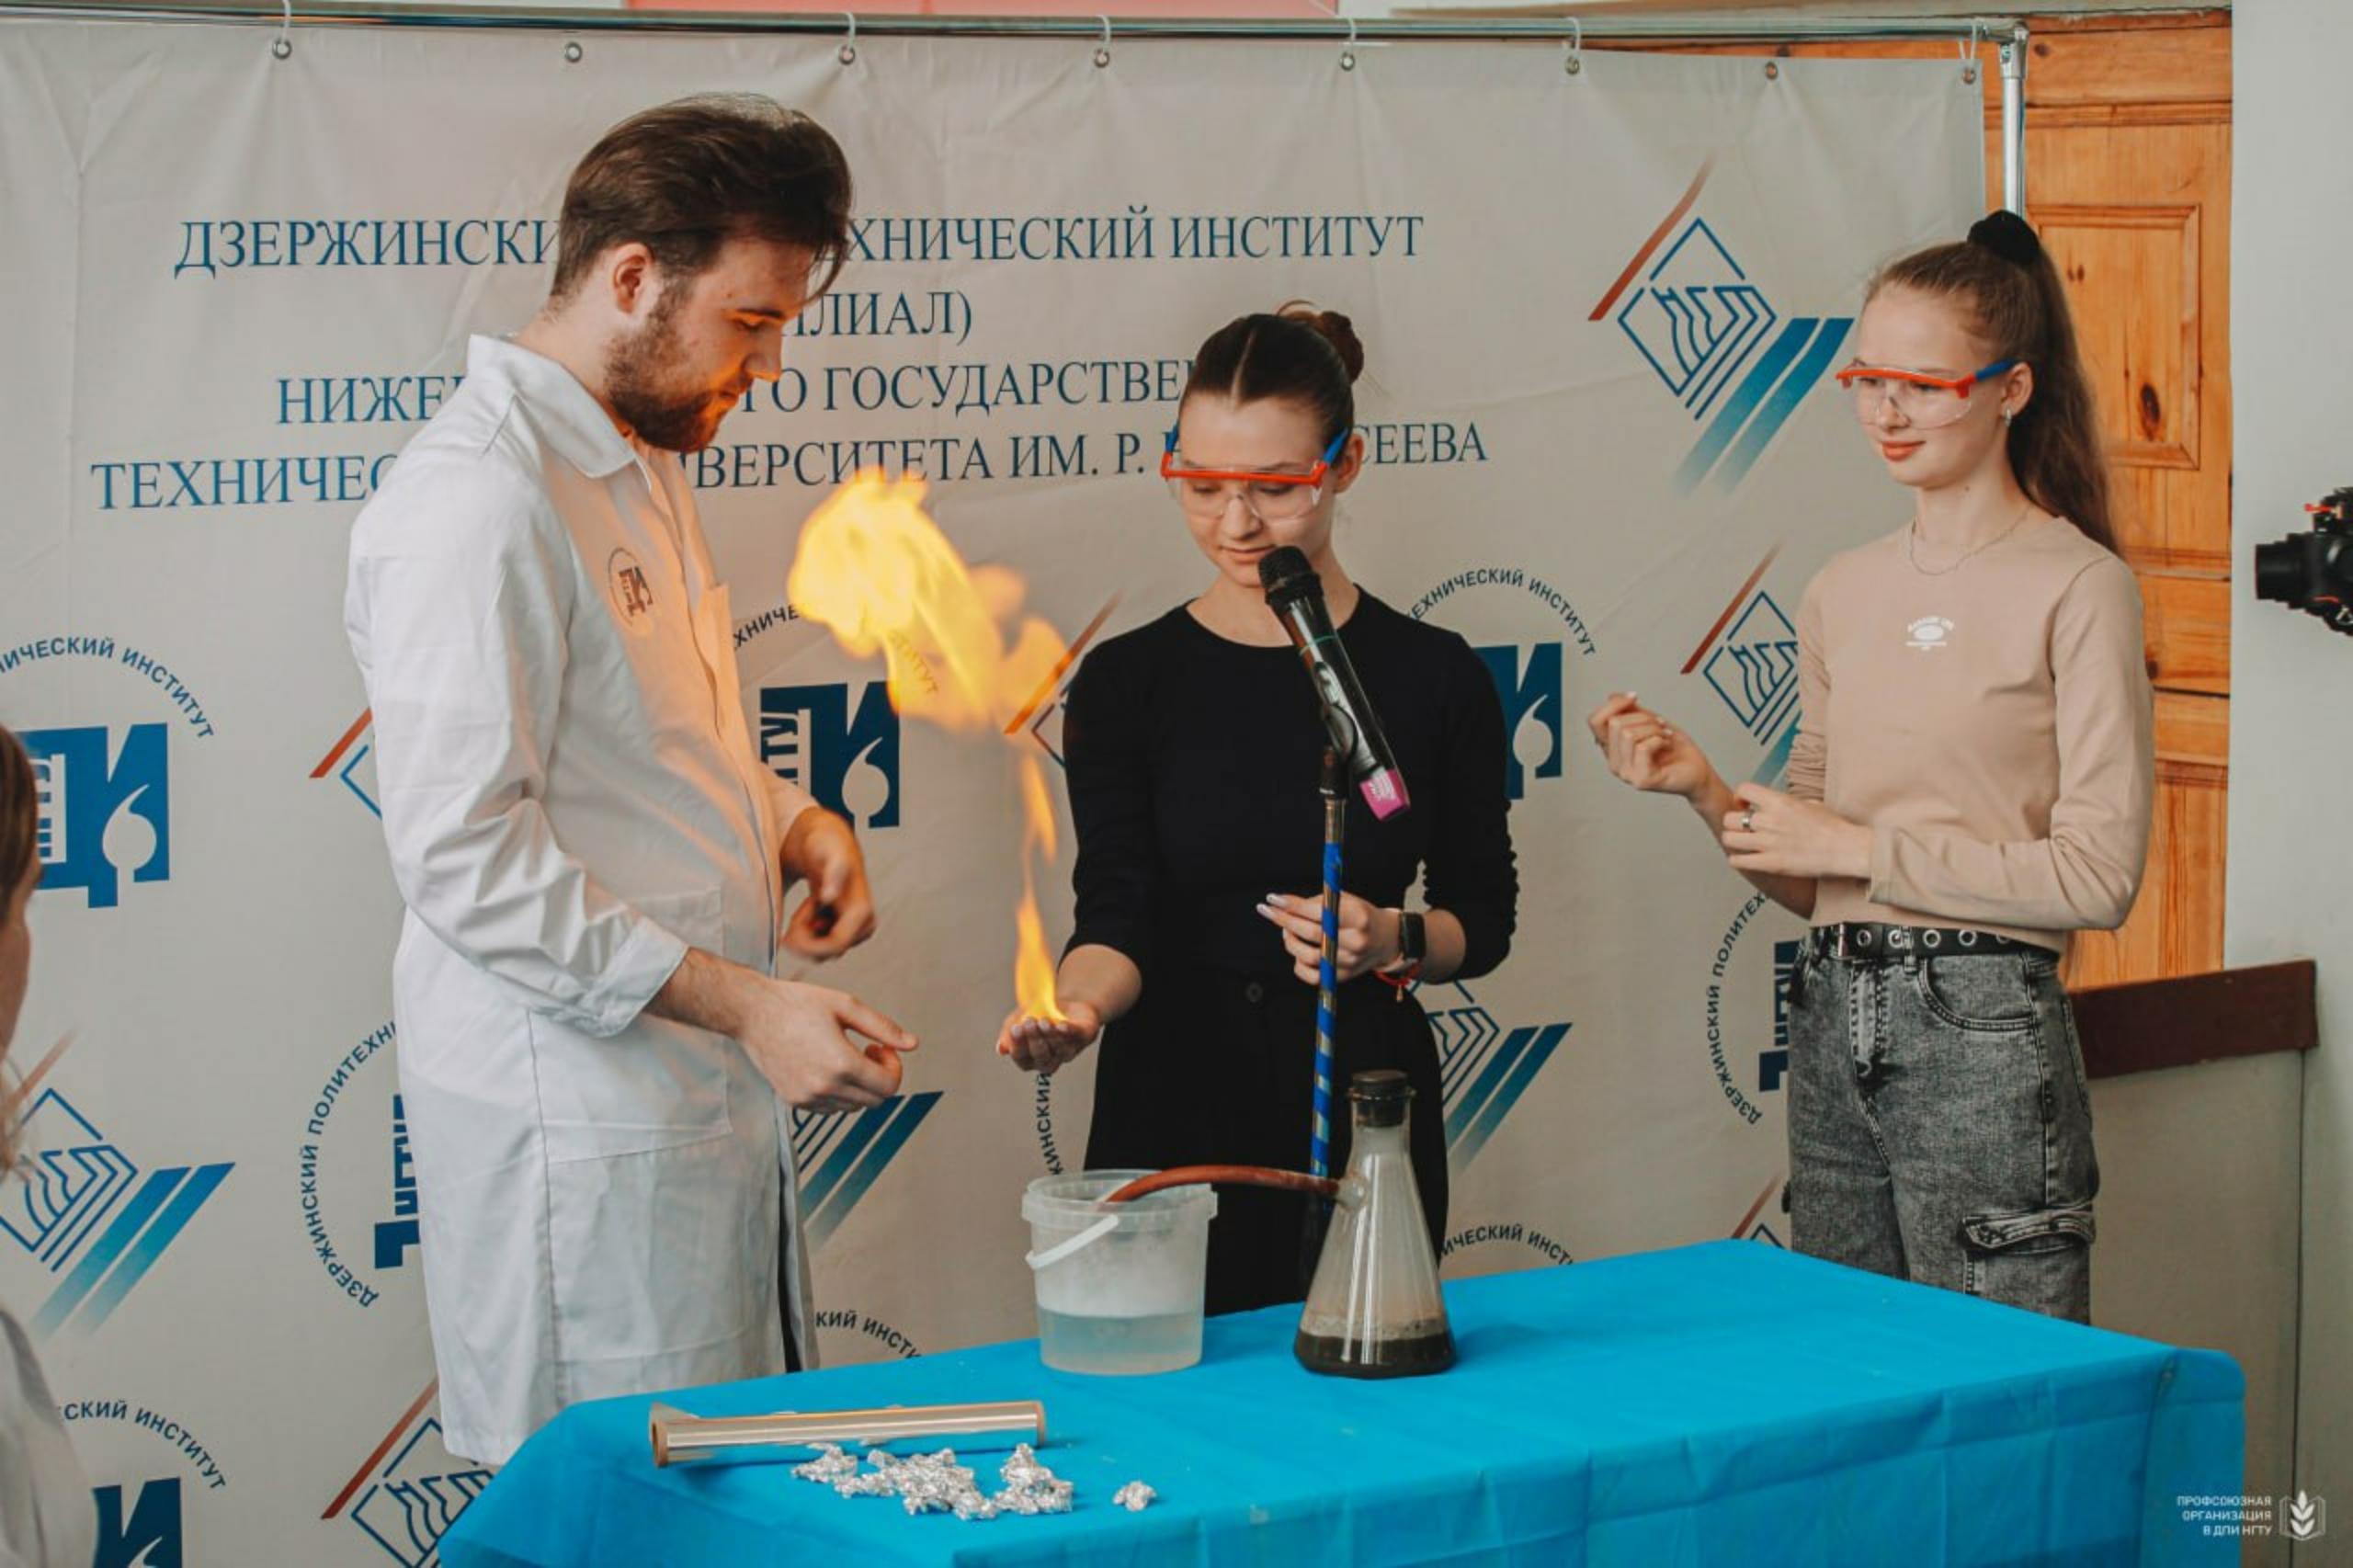 Фестиваль Дзержинского политехнического института посетило более 500 человек